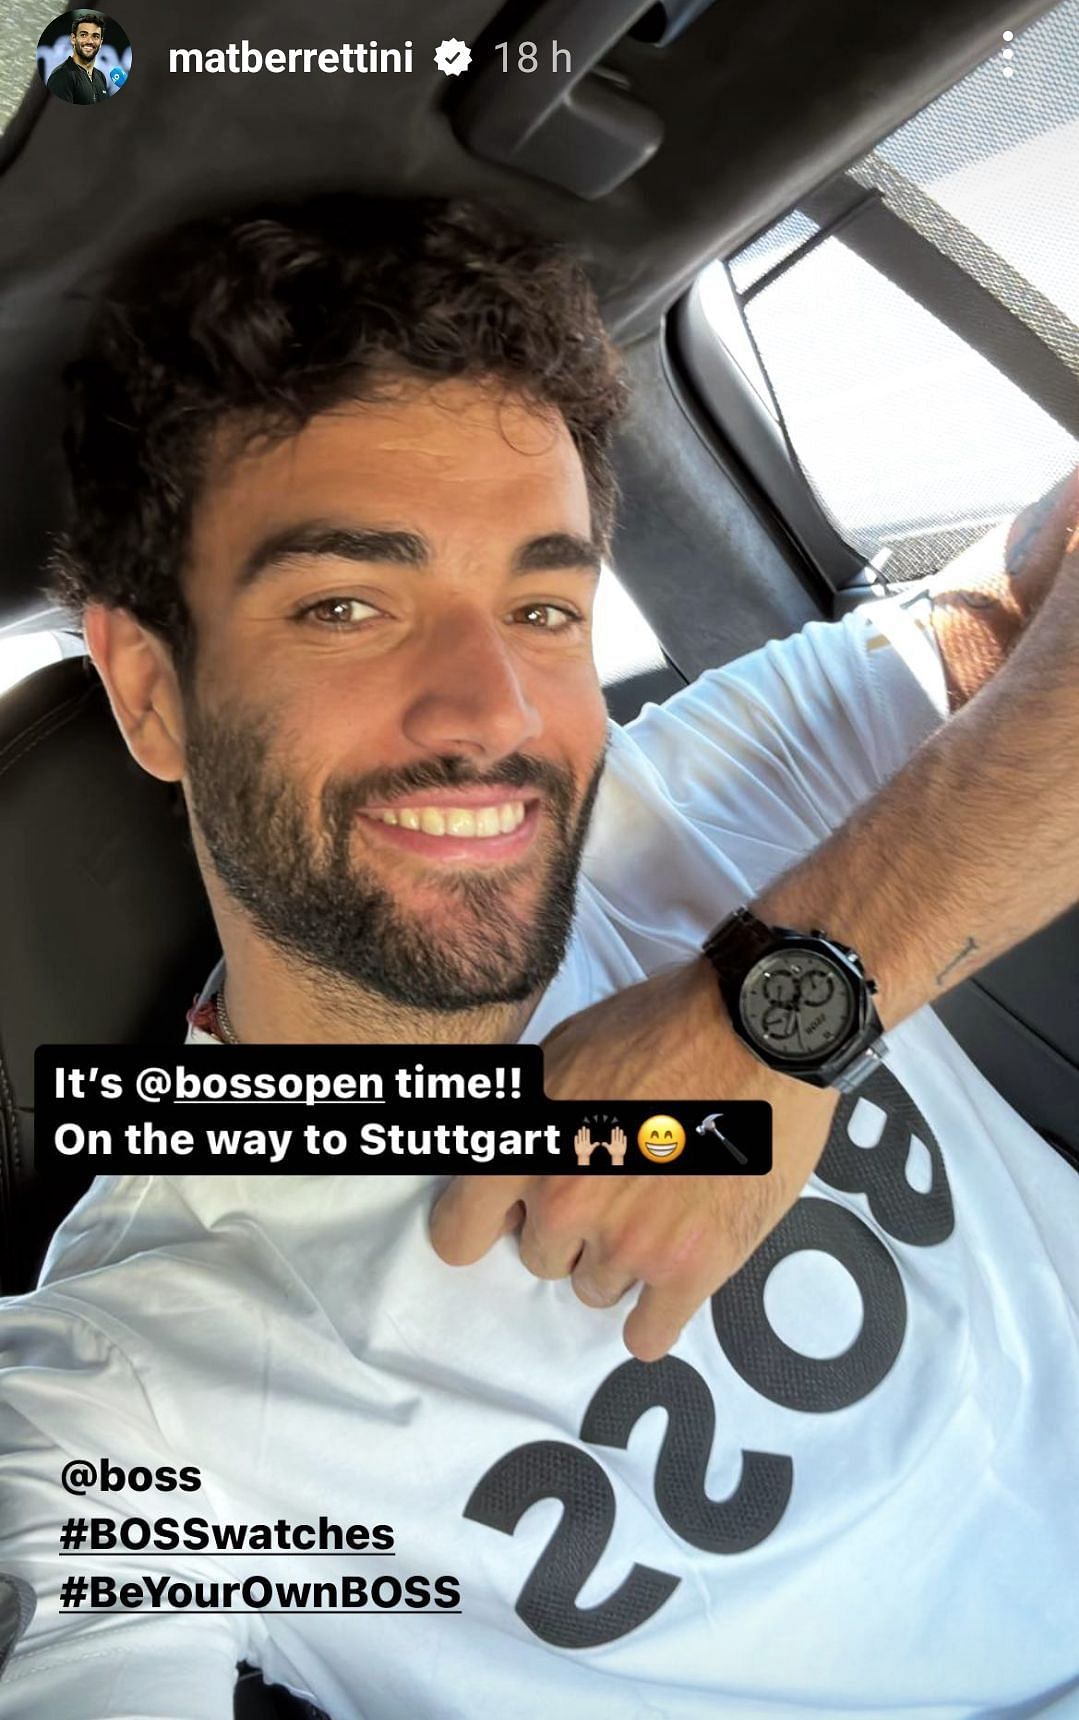 Matteo Berrettini en route to the Boss Open in Stuttgart